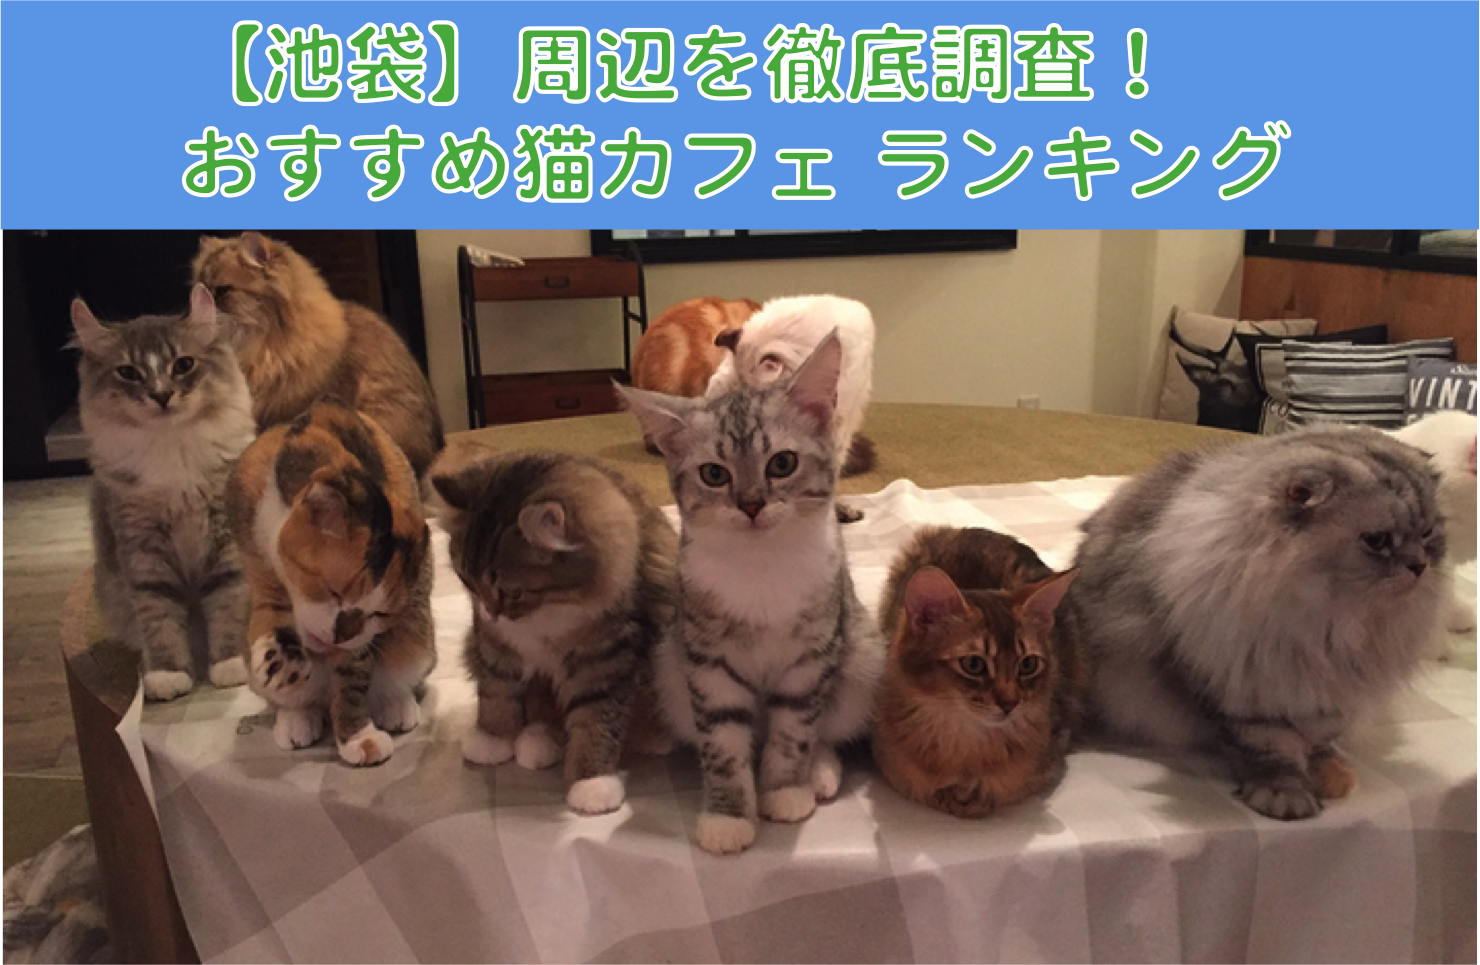 厳選 池袋でおすすめの猫カフェランキング 東京都 エリア別おすすめ猫カフェ特集